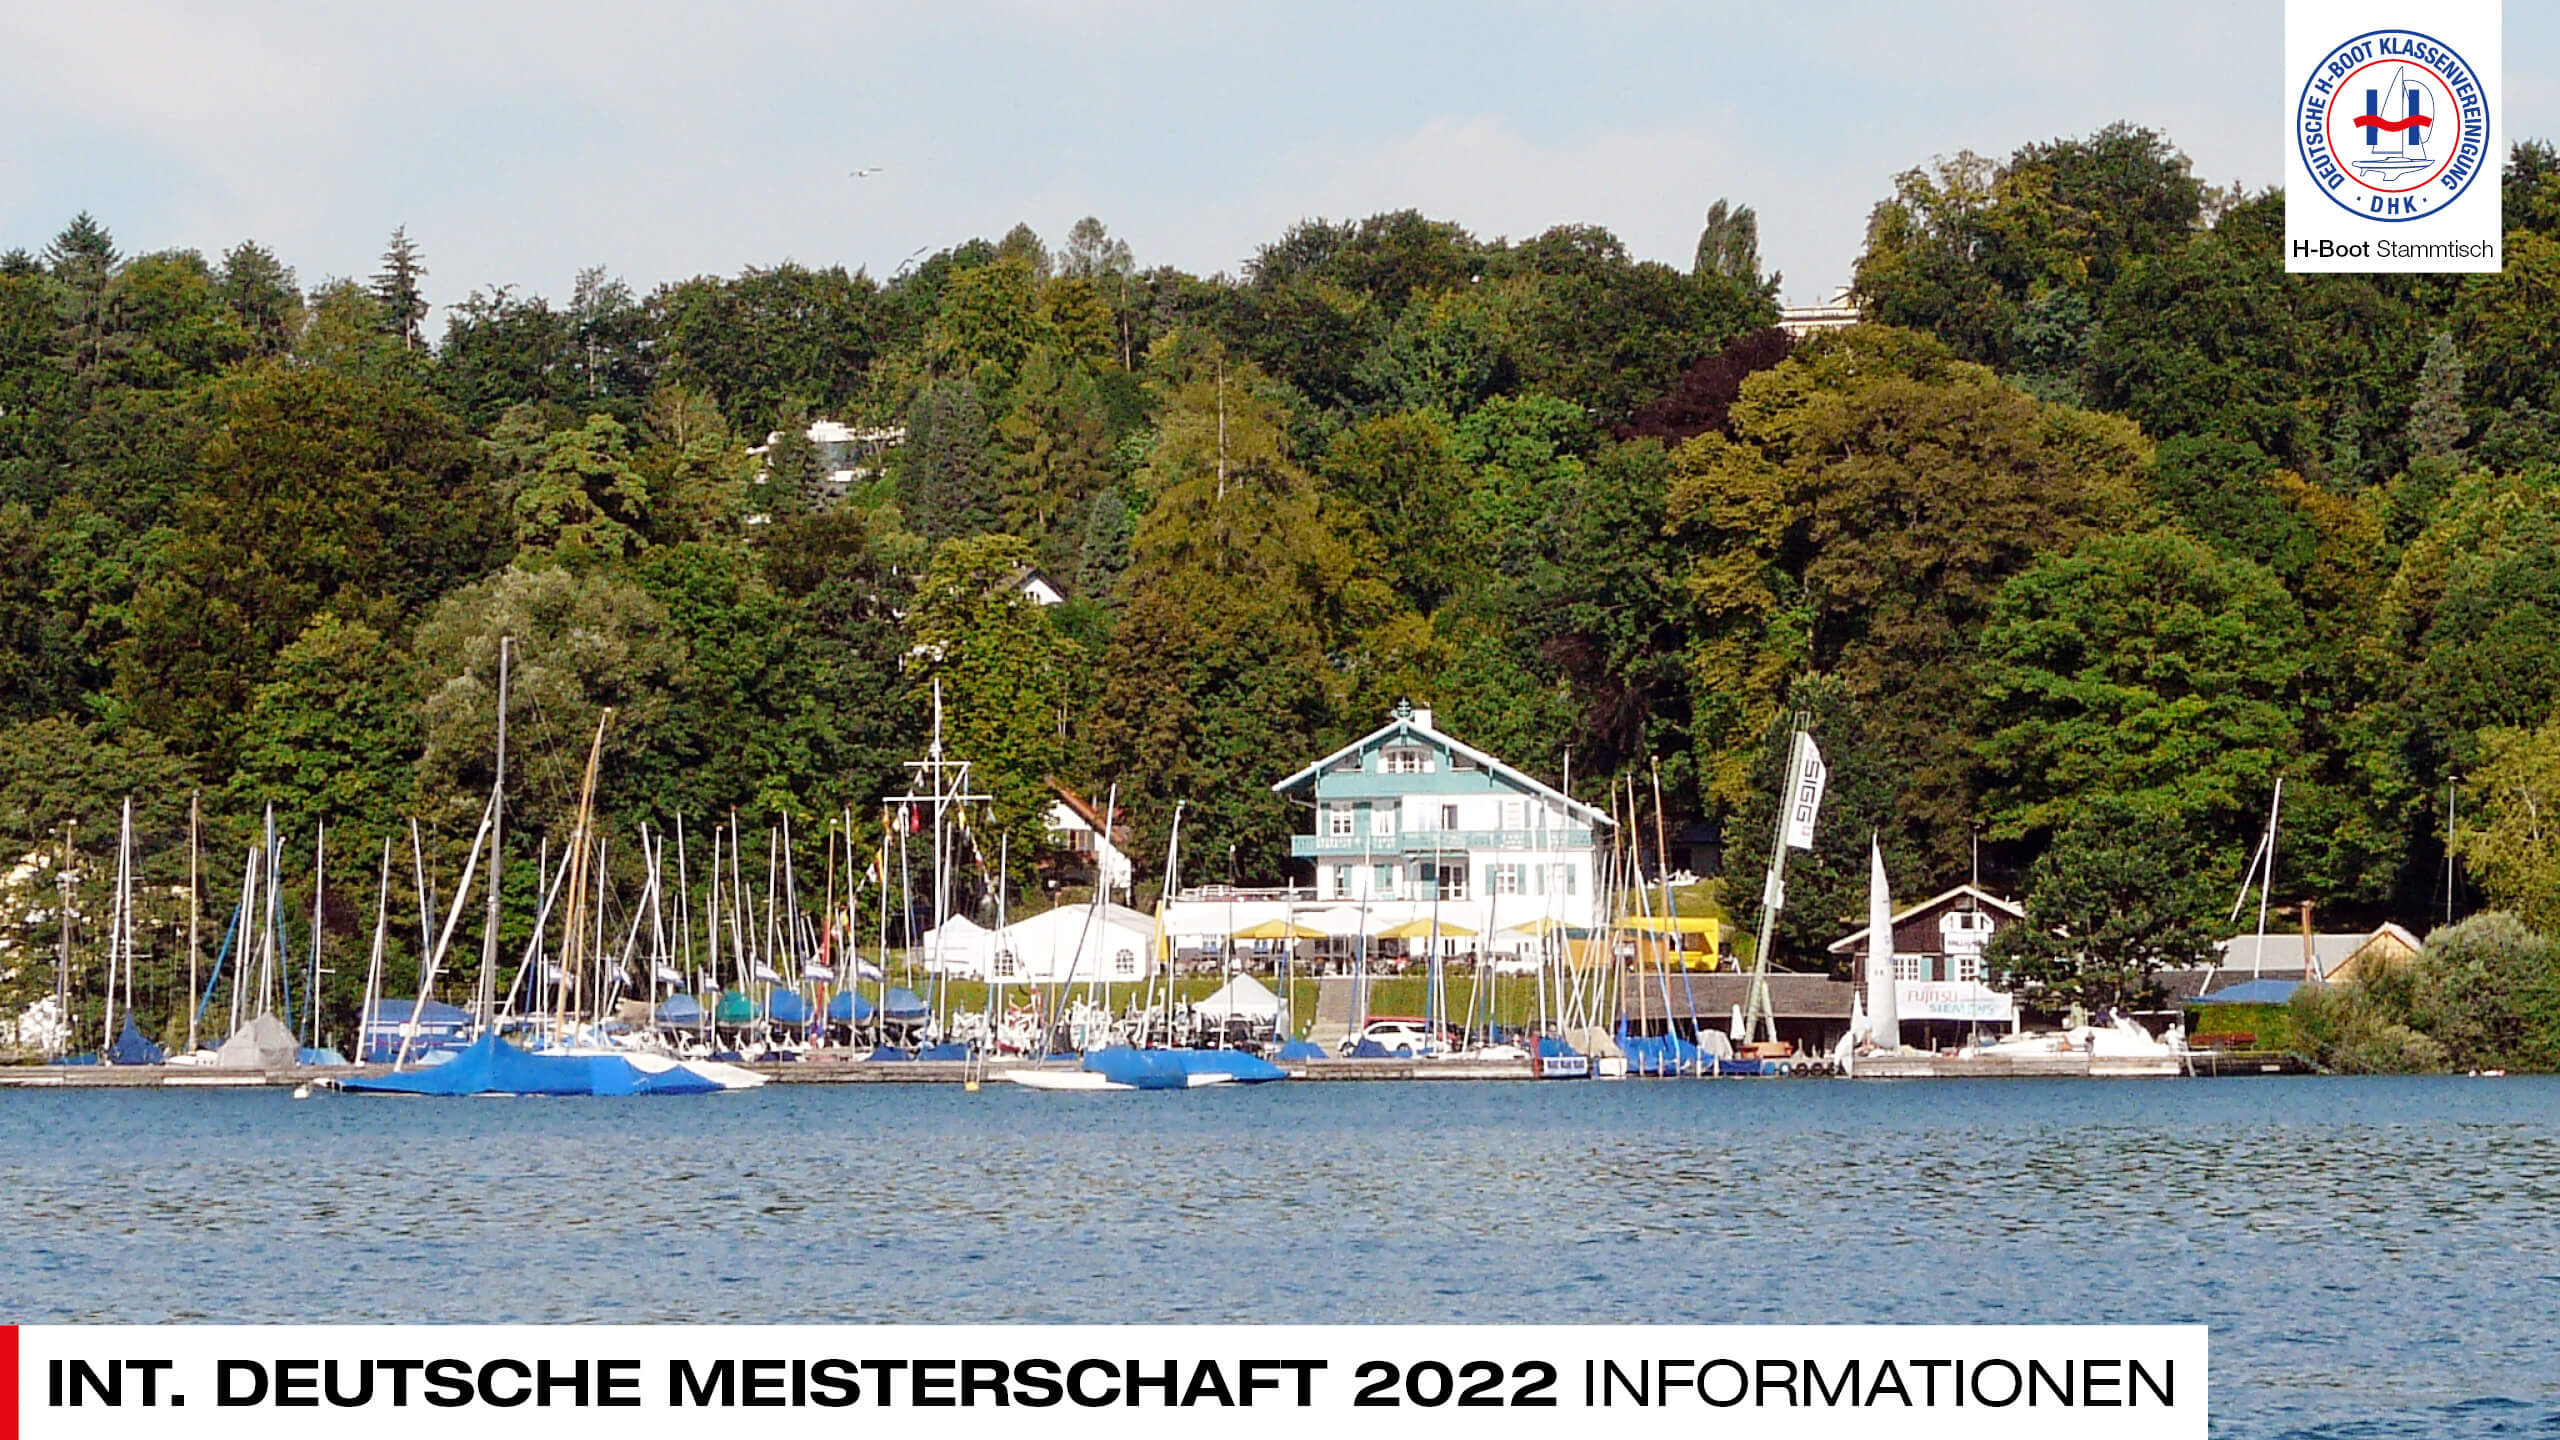 H-Boot Stammtisch Int. Deutsche Meisterschaft 2022.